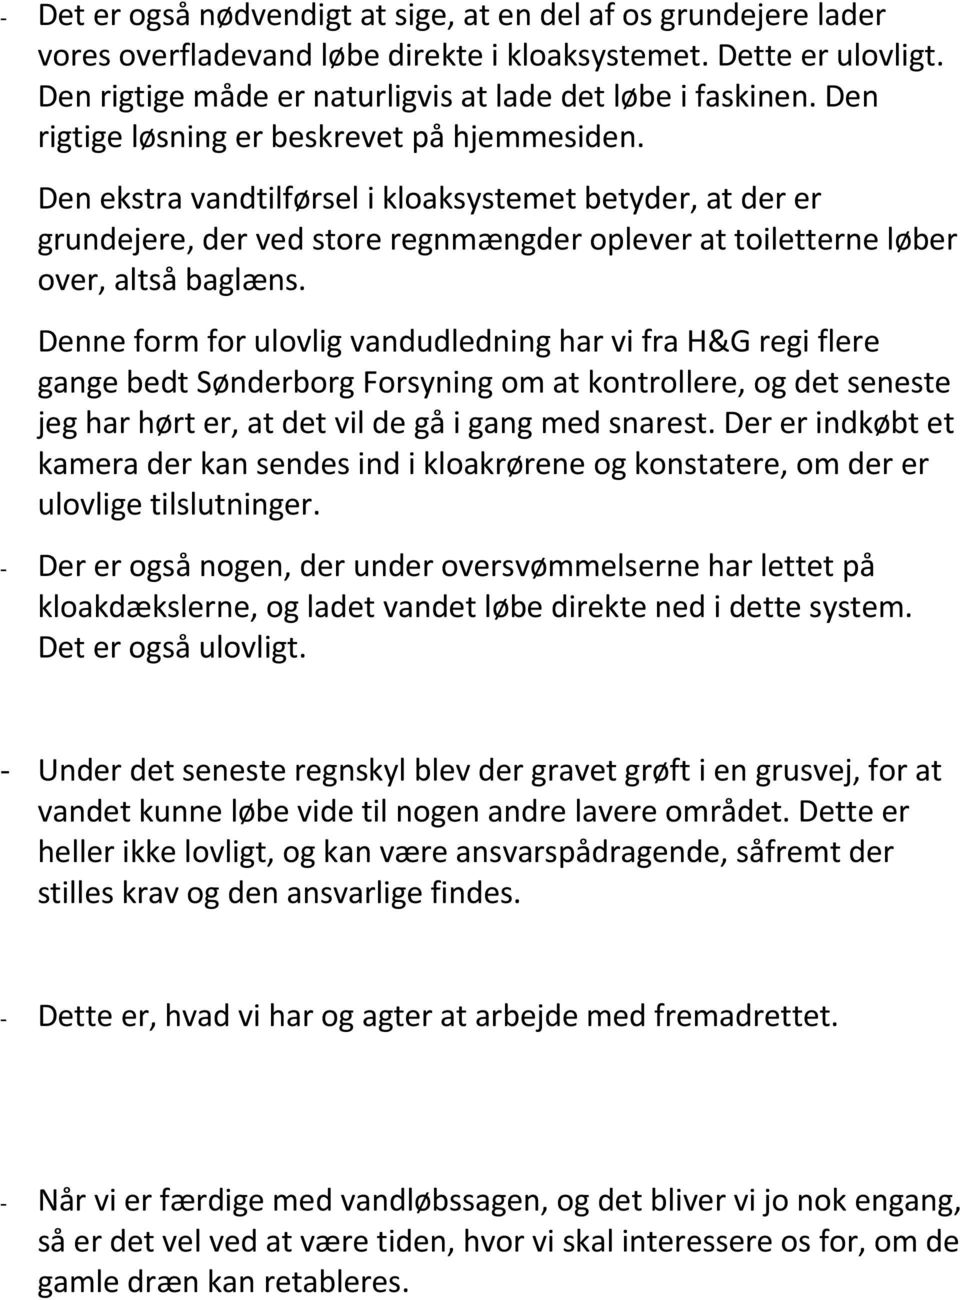 Denne form for ulovlig vandudledning har vi fra H&G regi flere gange bedt Sønderborg Forsyning om at kontrollere, og det seneste jeg har hørt er, at det vil de gå i gang med snarest.